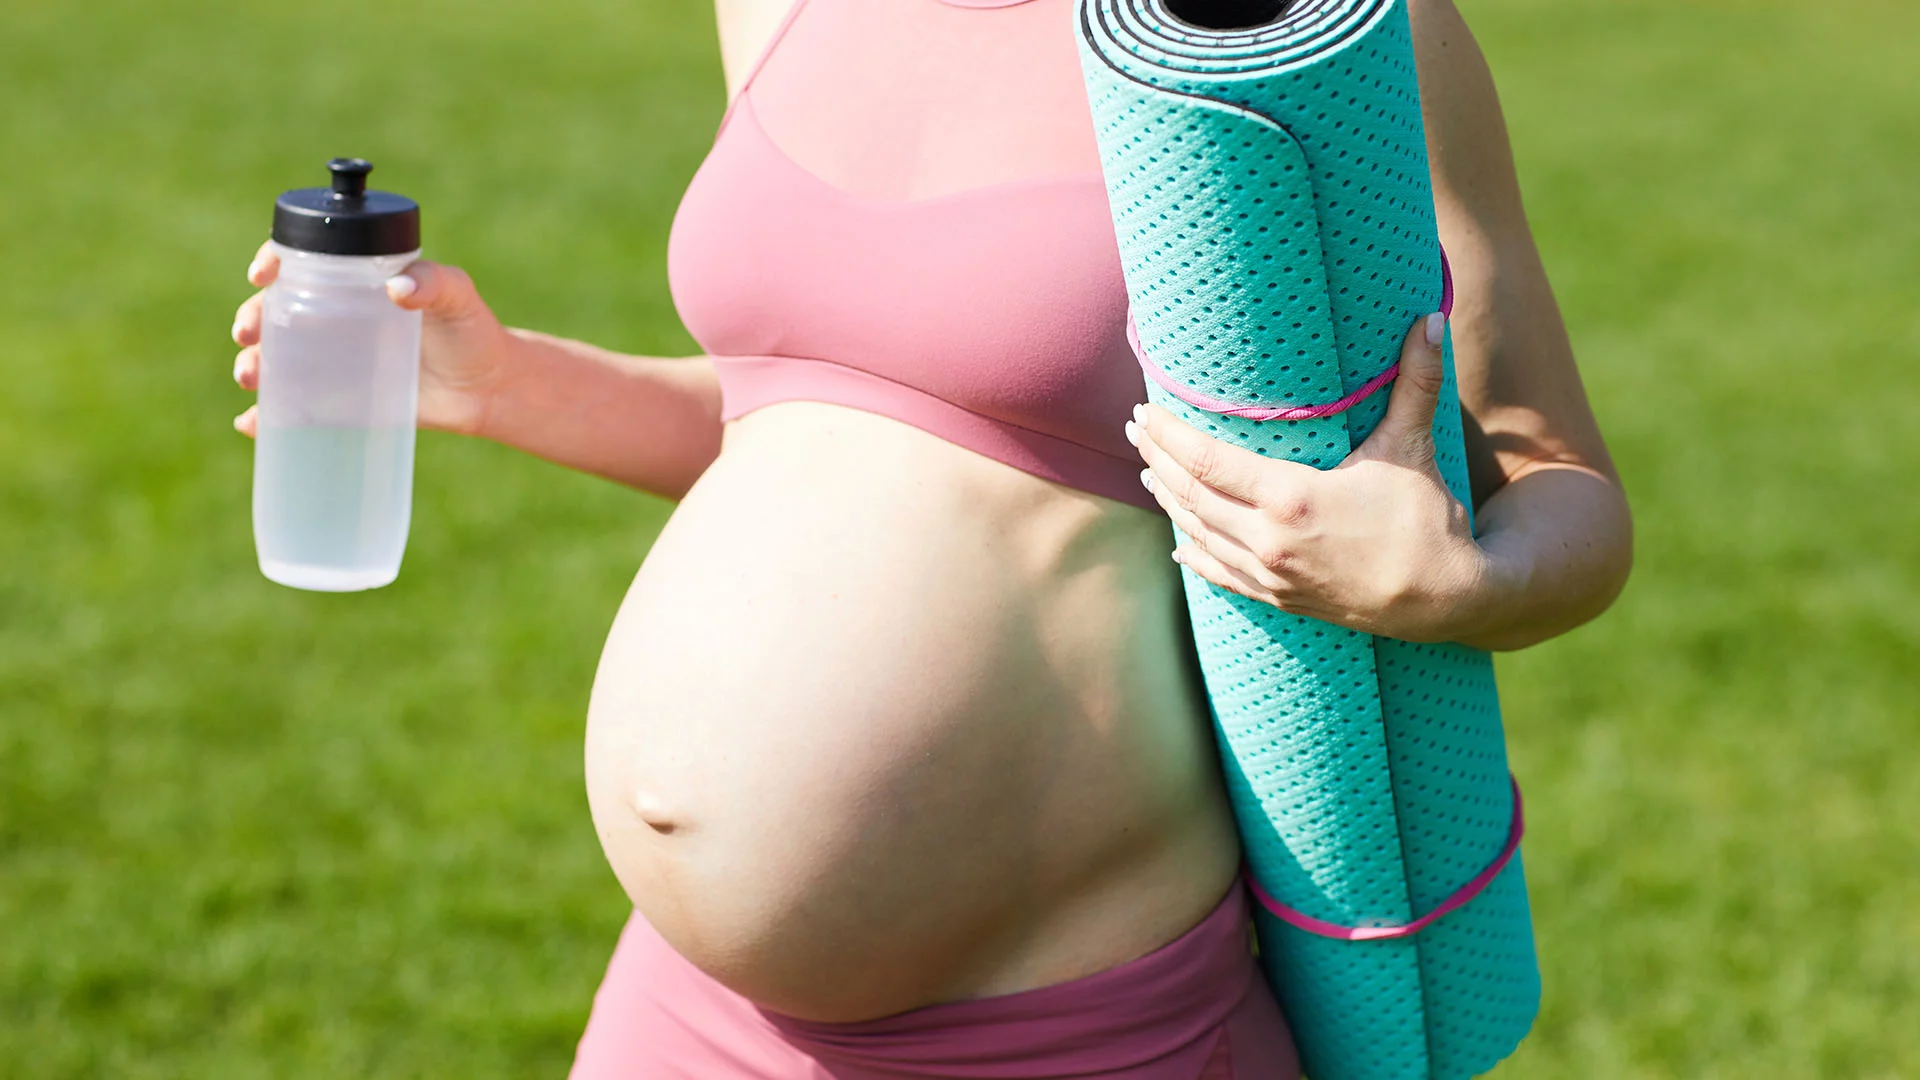 Le sport est-il une bonne idée pour les femmes enceintes? Si oui, comment?